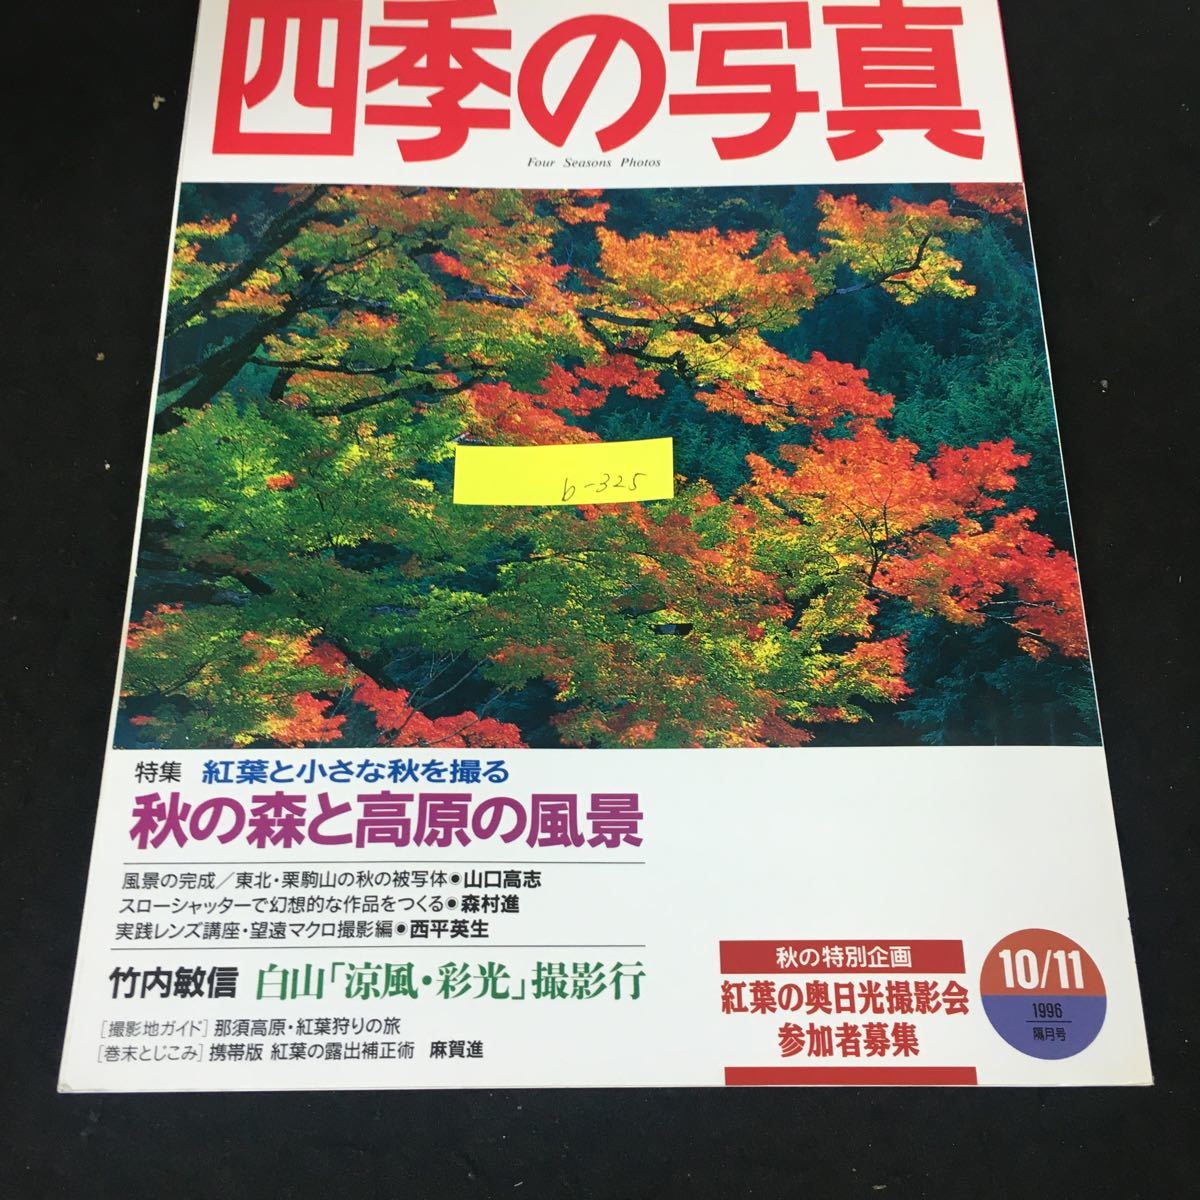 b-325 4...    фотография   специальное издание  осень      лес  и  высота  ...    ветер ...  ноябрь  номер    Сo.,Ltd. ... исследования ... 1996 год   выпуск ※12